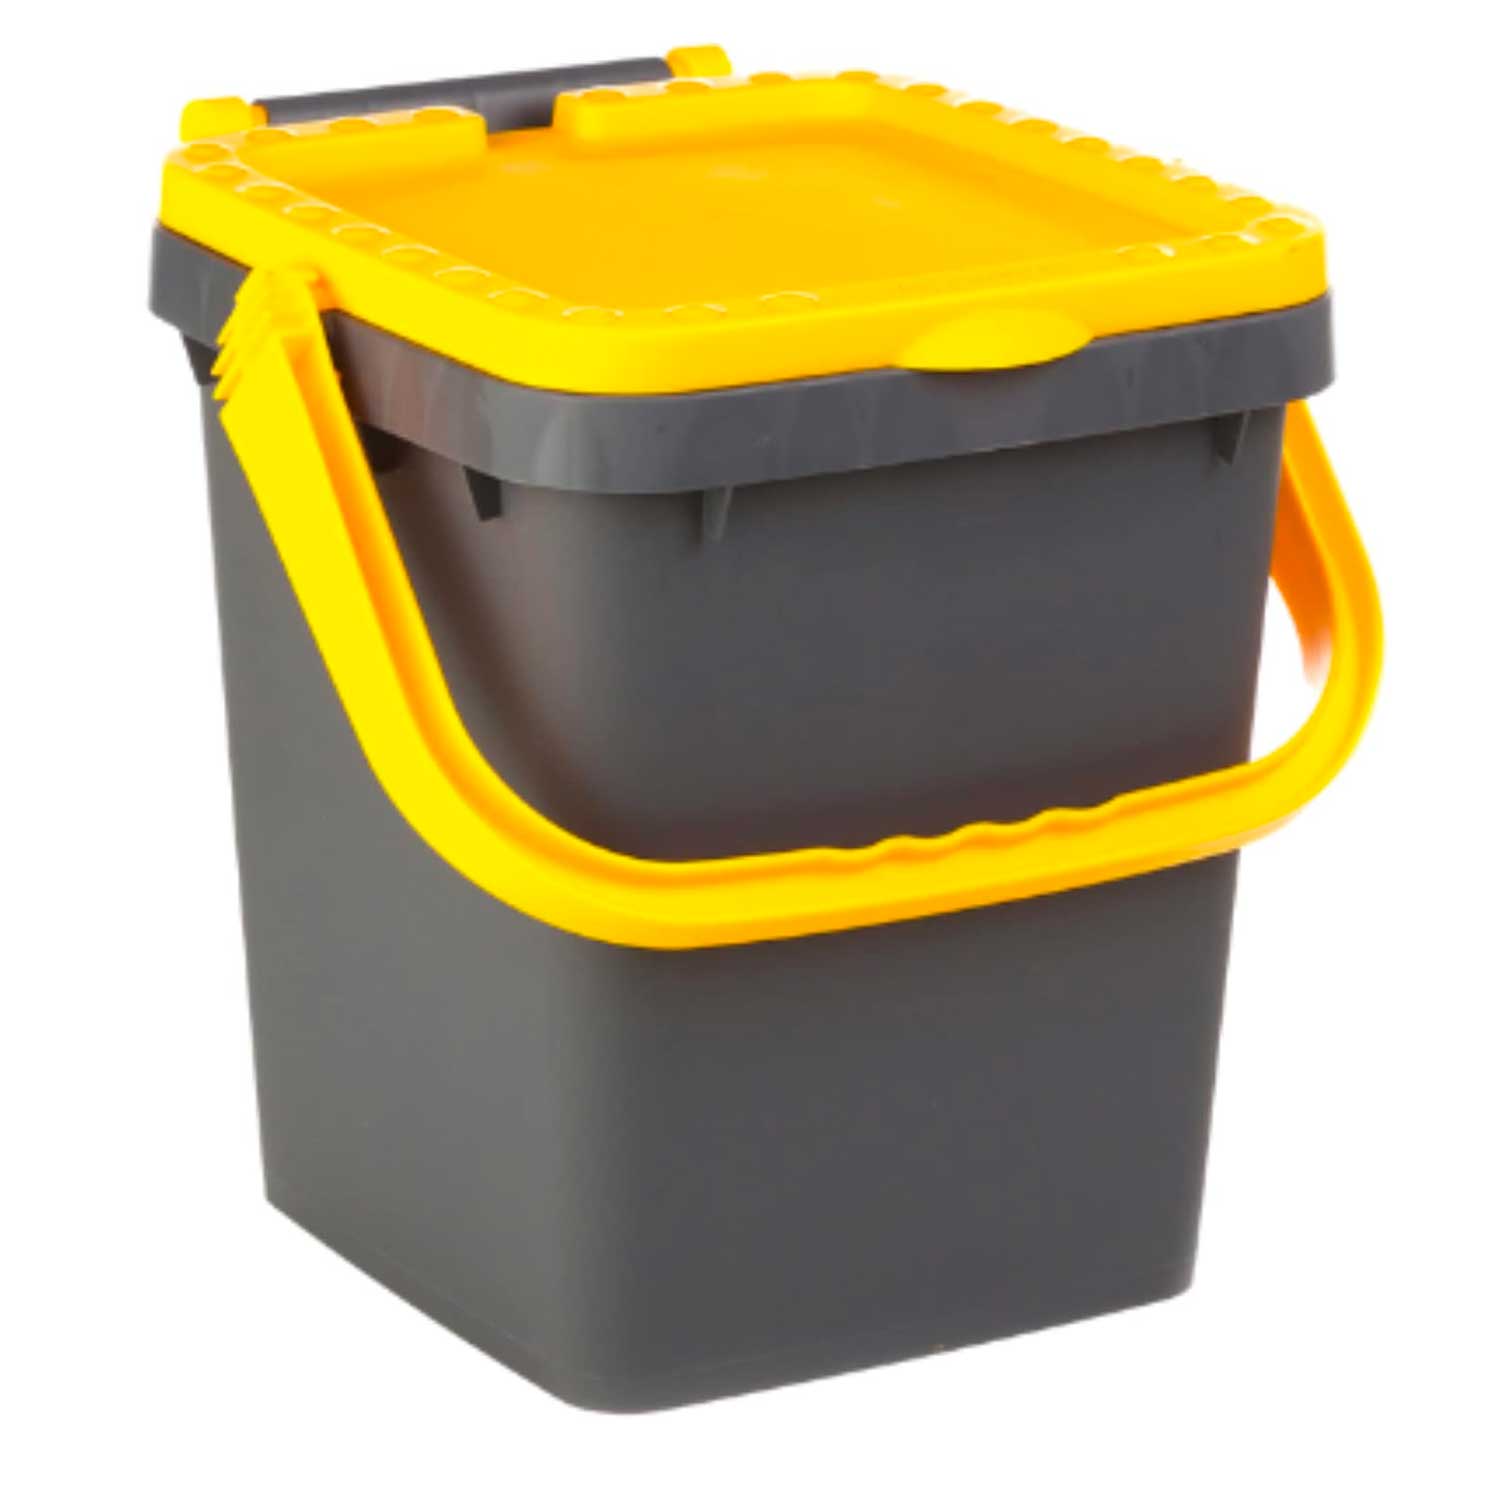 Ecoplast | pattumiera per raccolta differenziata 20 lt, bidone spazzatura giallo